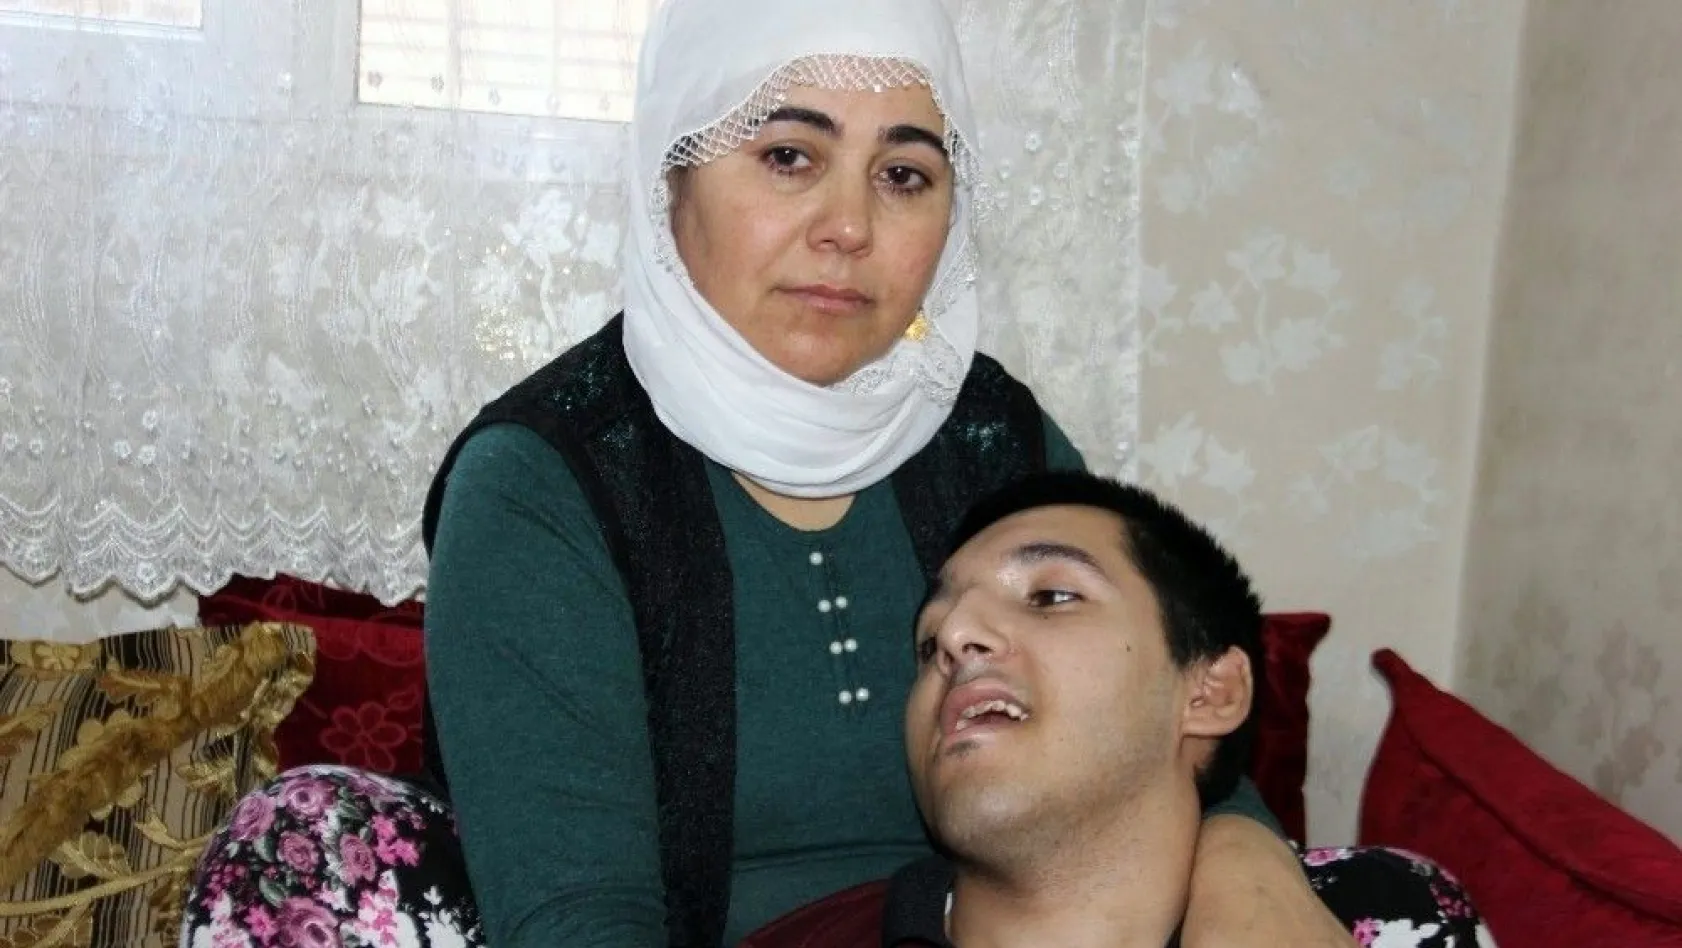 9 yıldır yatalak olan SSPE hastası oğluna bakan anne yardım bekliyor